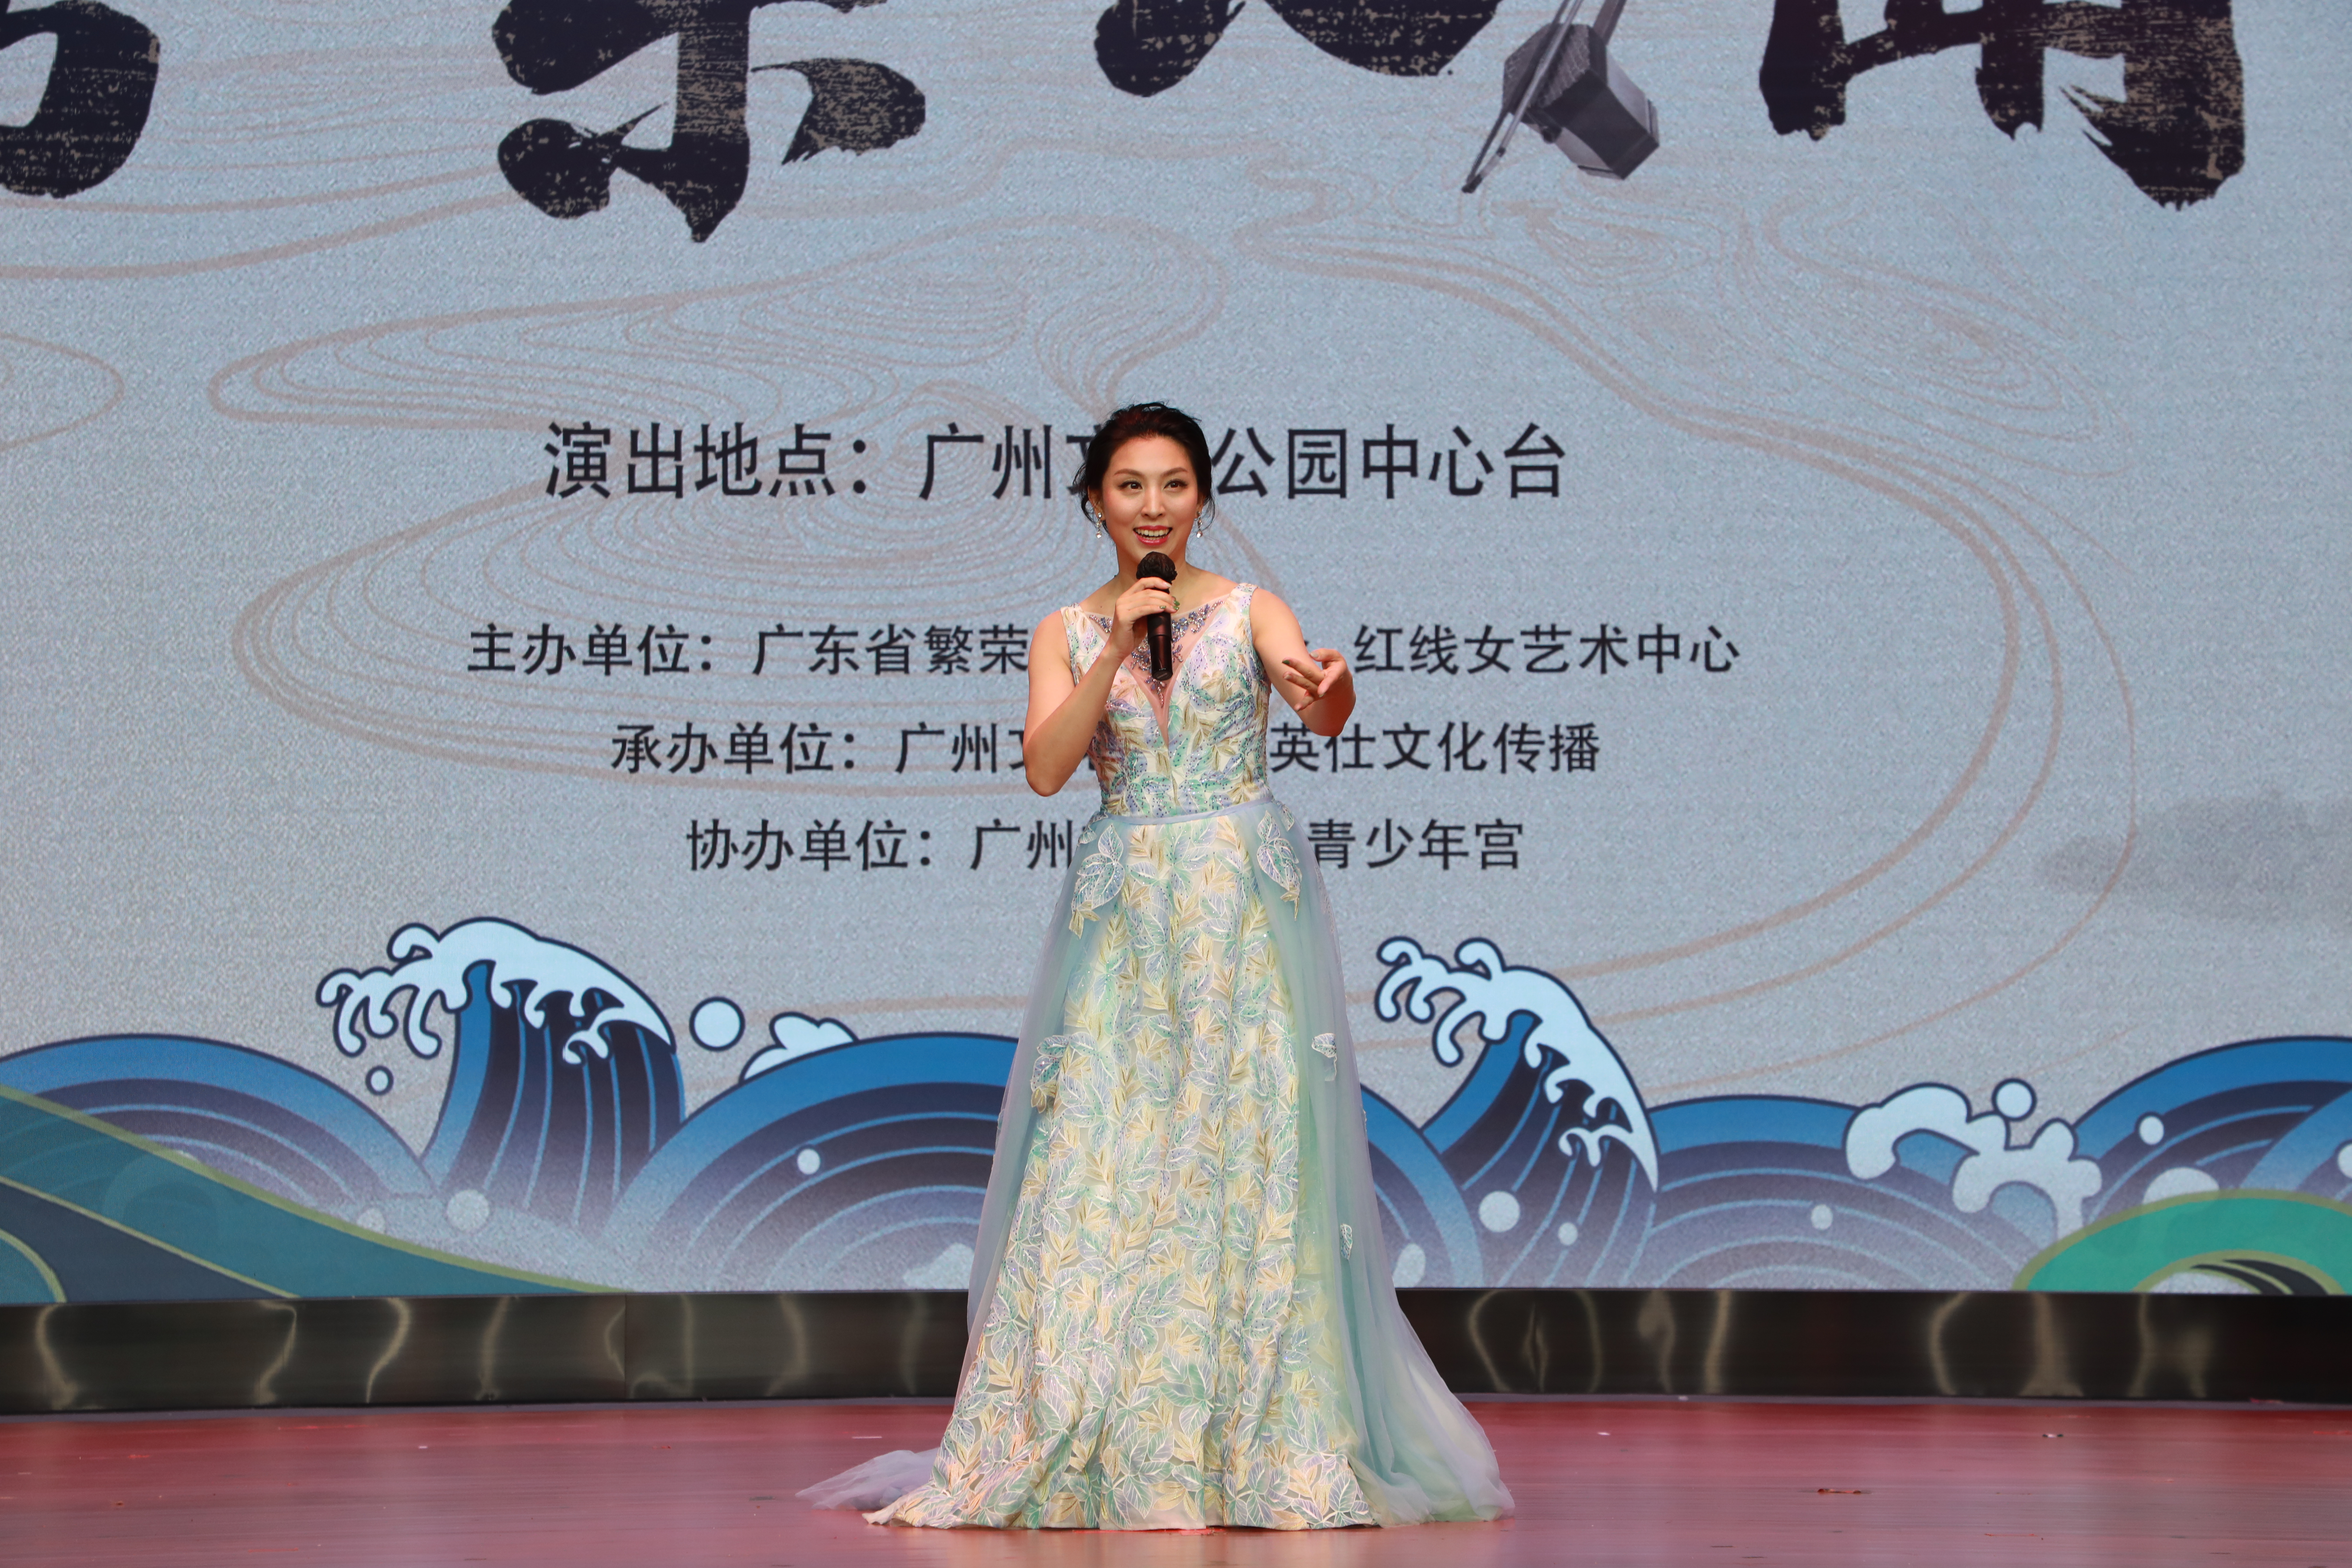 国家二级演员、粤剧表演艺术家葛锐娟现场演唱